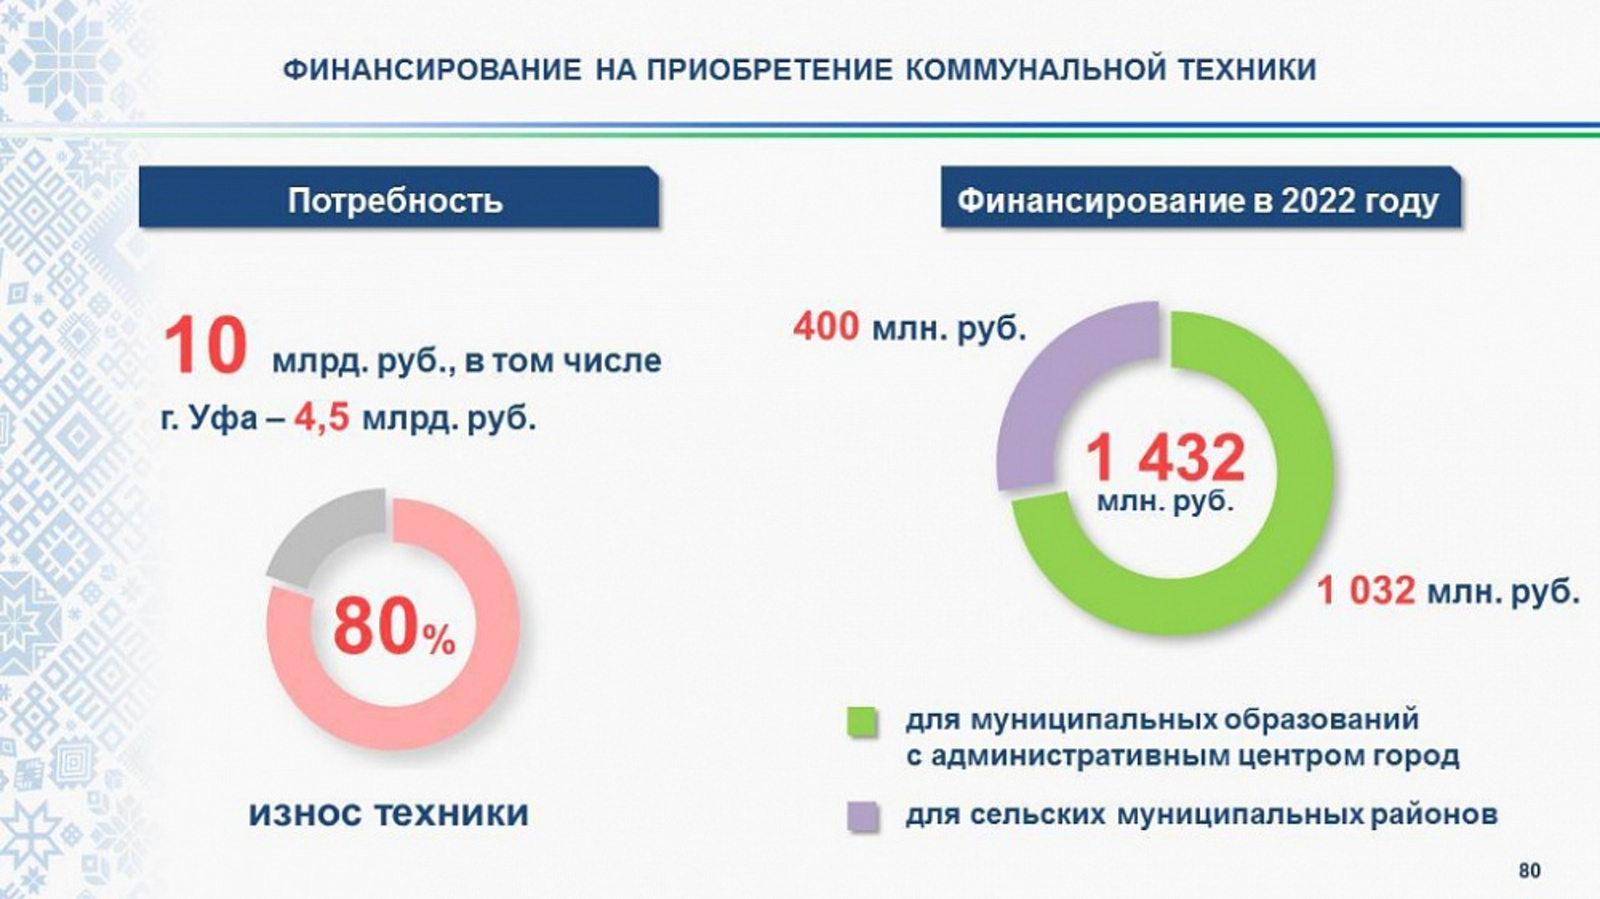 В 2022 году Башкортостан направит 1,4 млрд рублей на закупку коммунальной техники для нужд муниципалитетов